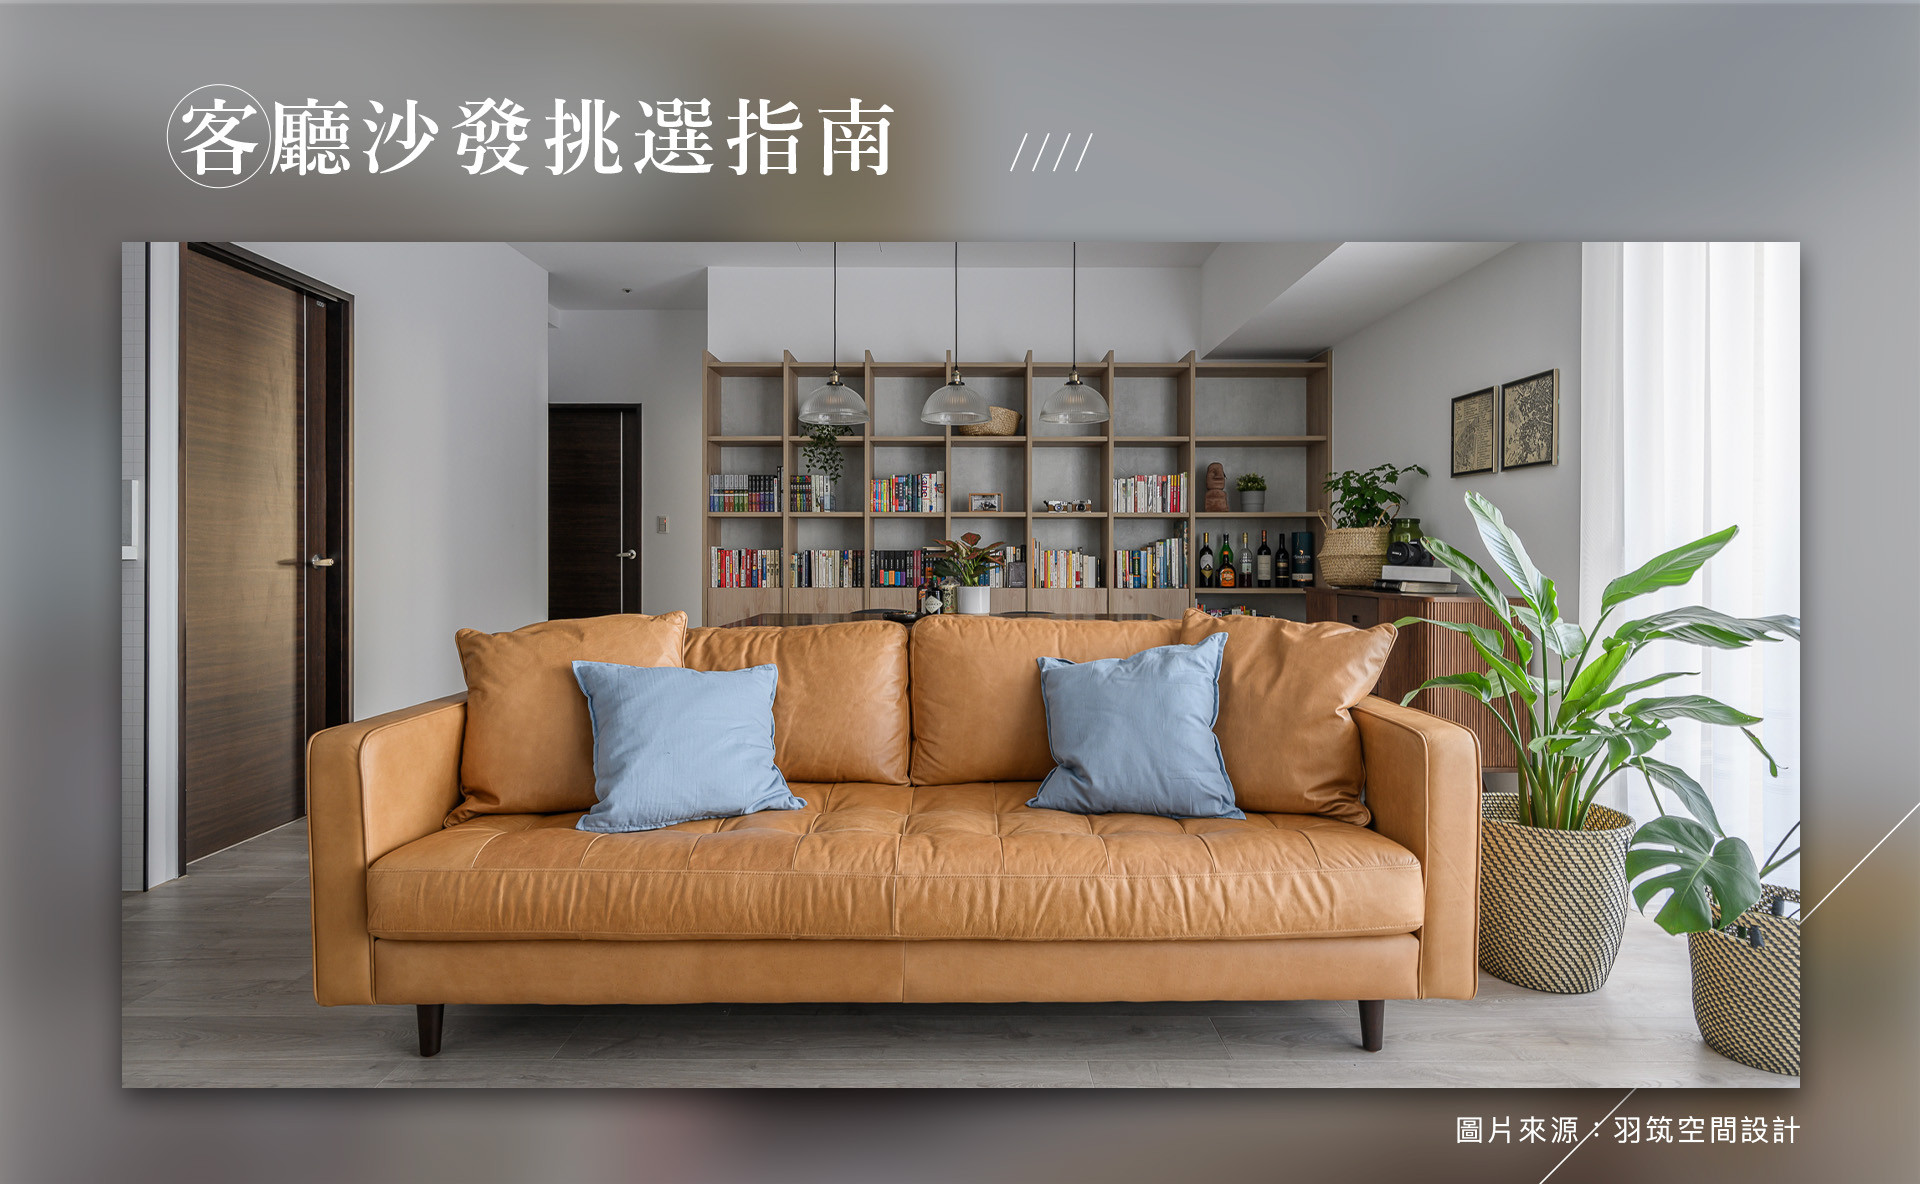 客廳沙發選購指南┃3關鍵大公開，教你挑選適合的材質和款式